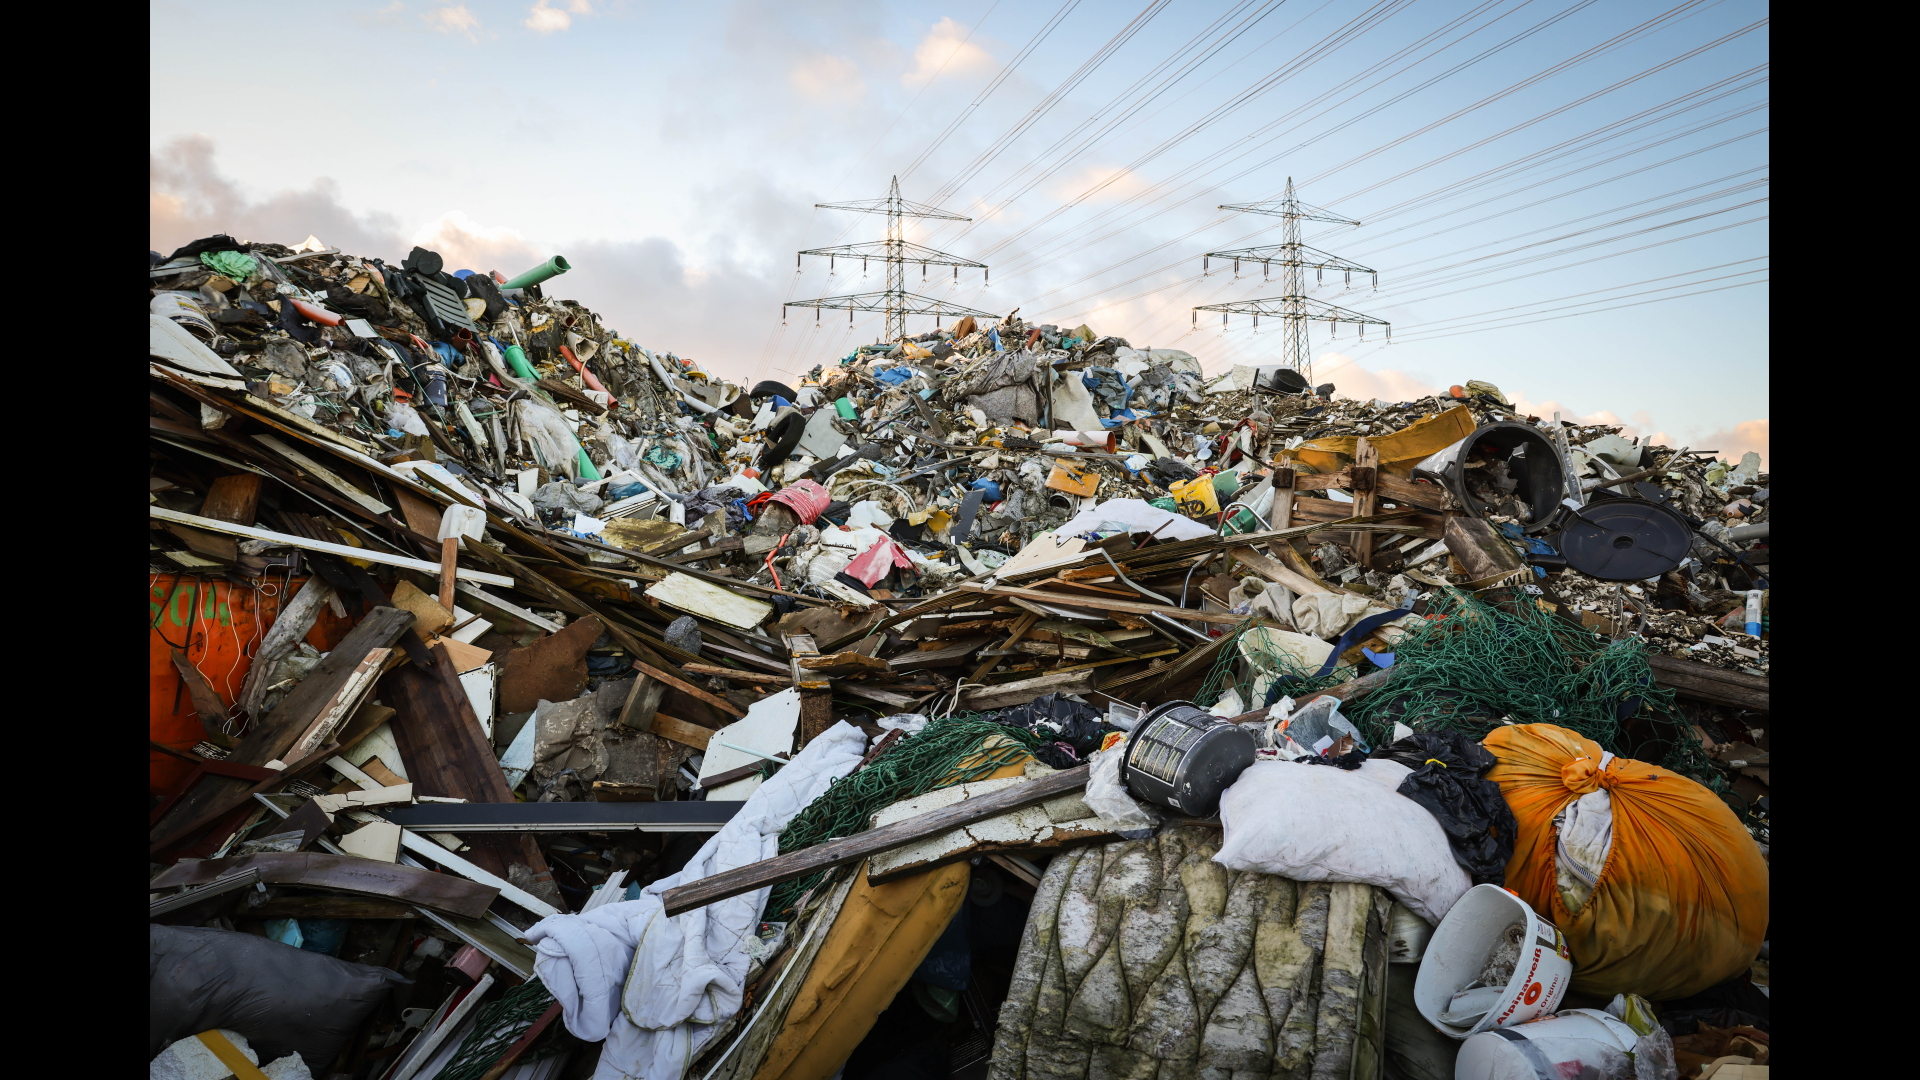 Bergeweise Müll auf einer Deponie in Norderstedt bei Hamburg | dpa